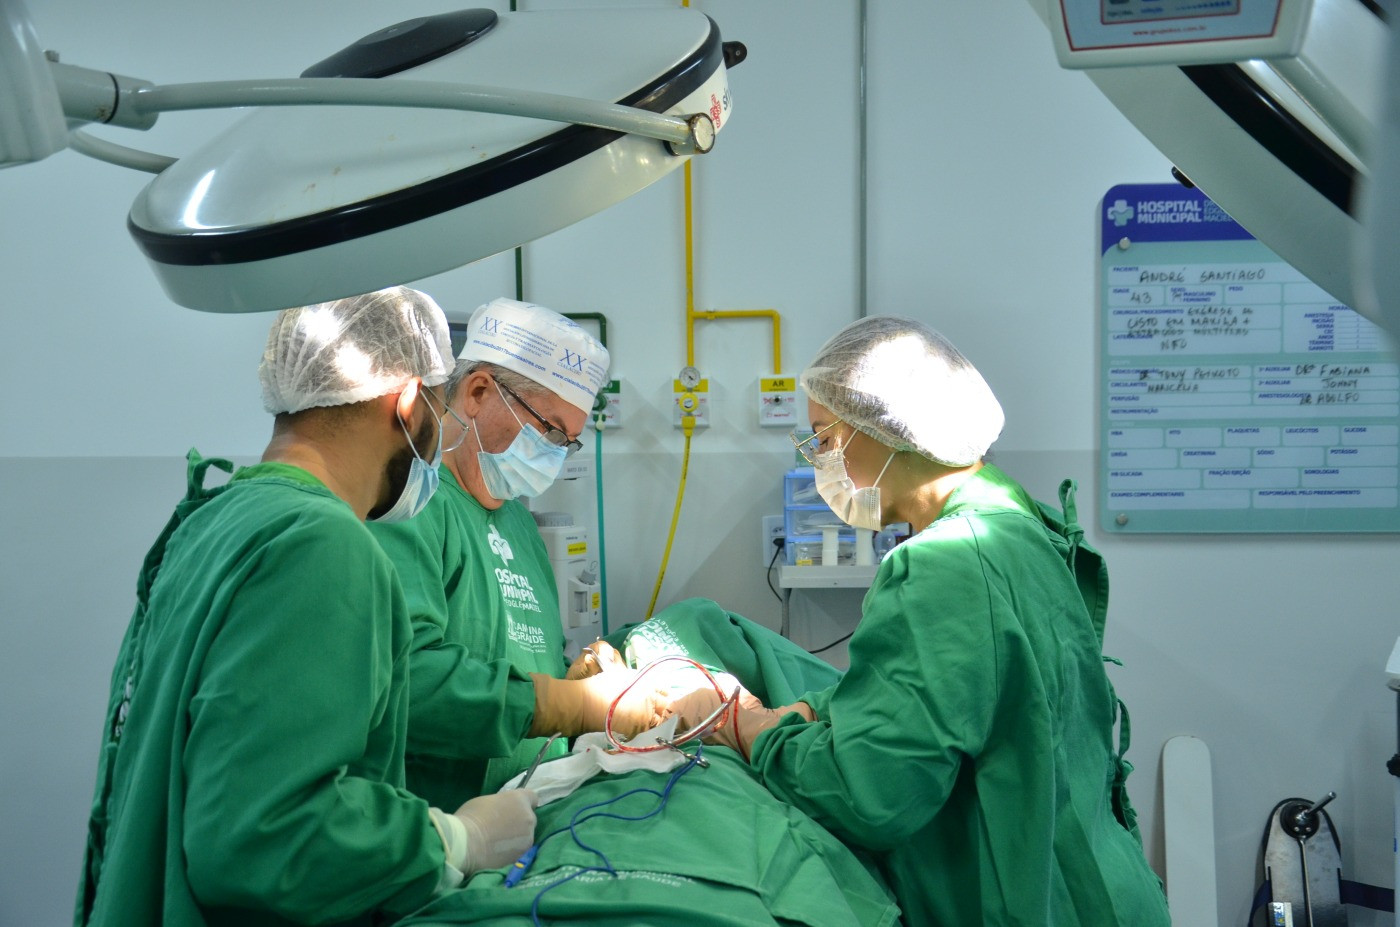 Centro cirúrgico do Hospital Dr. Edgley realiza mais de 3.500 cirurgias em um ano